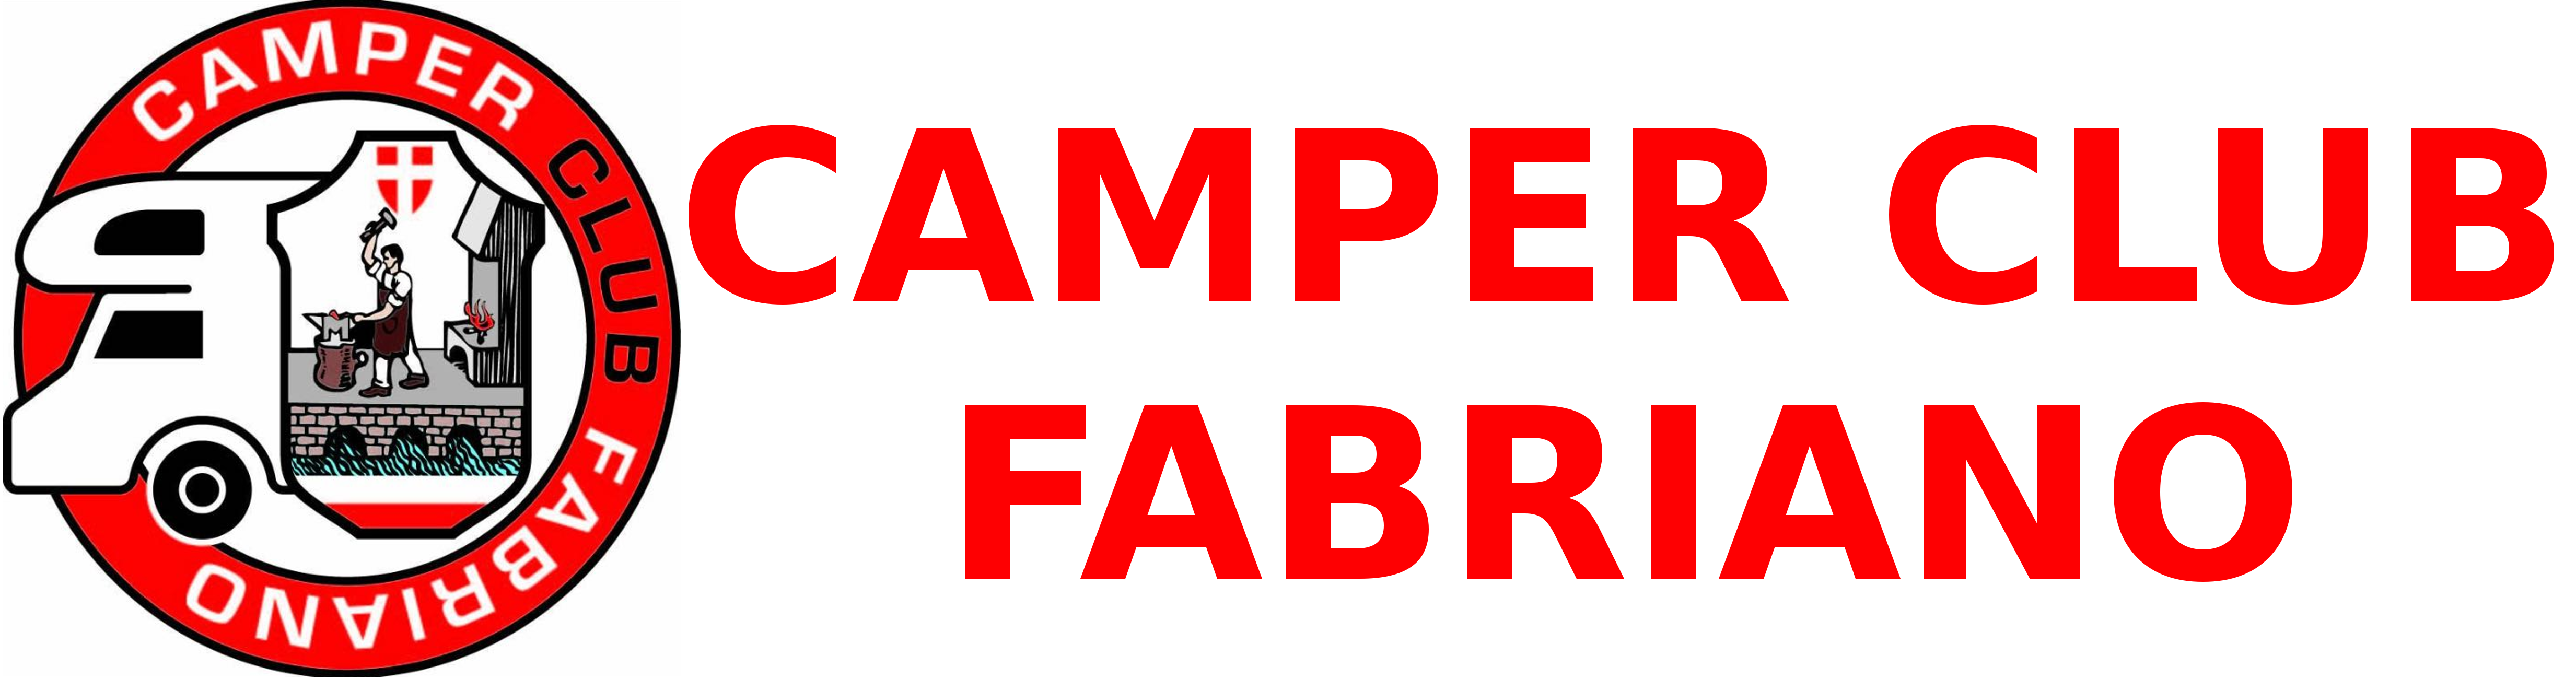 CAMPERCLUB FABRIANO